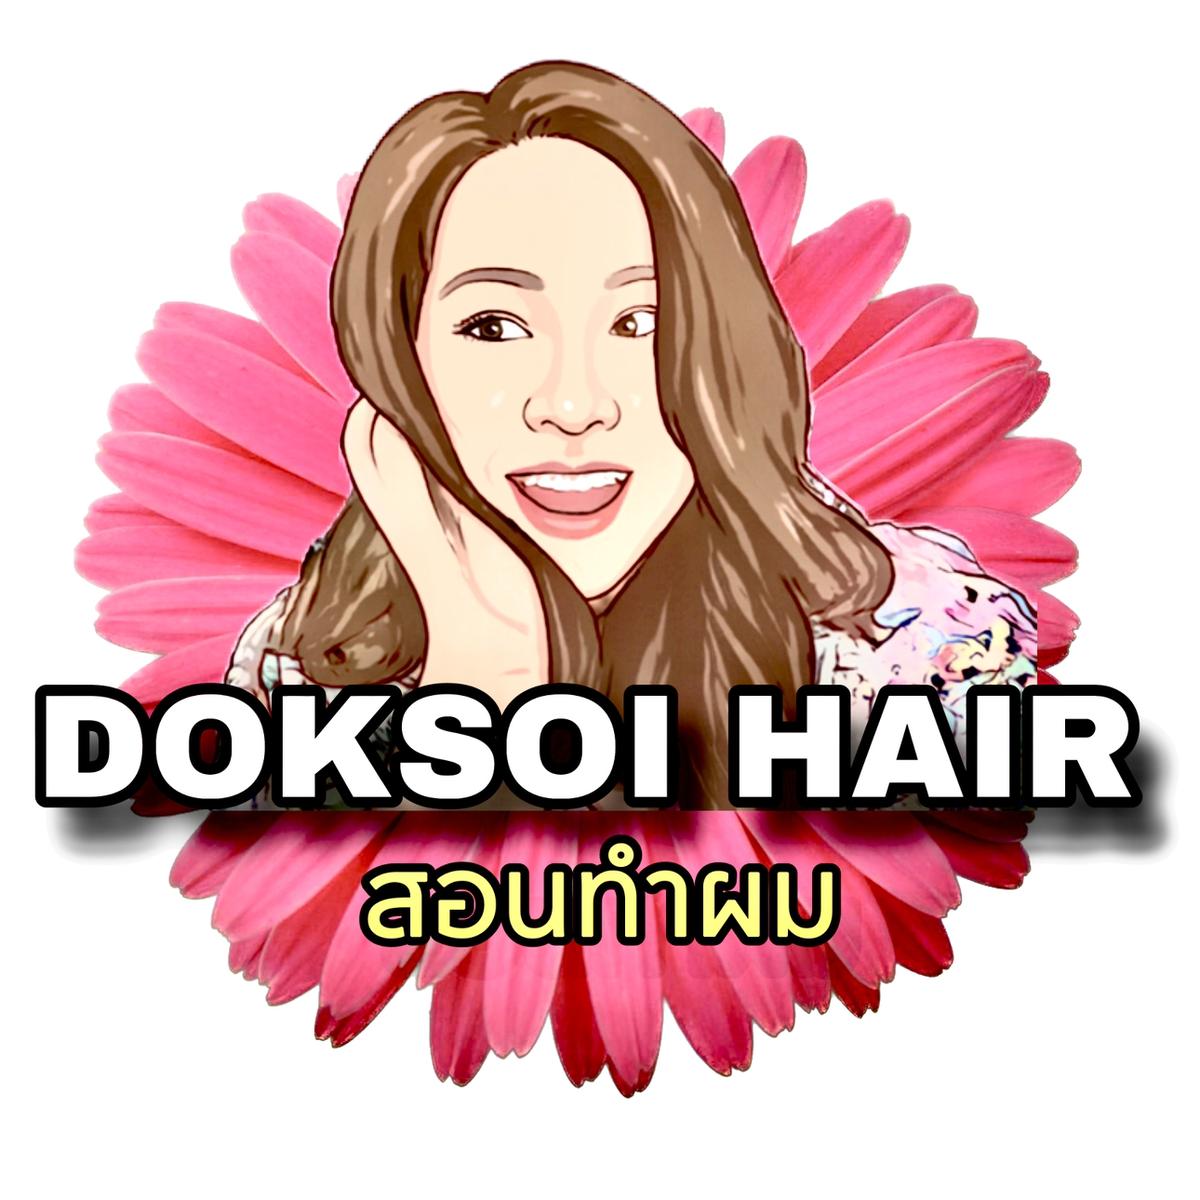 DOKSOI HAIR